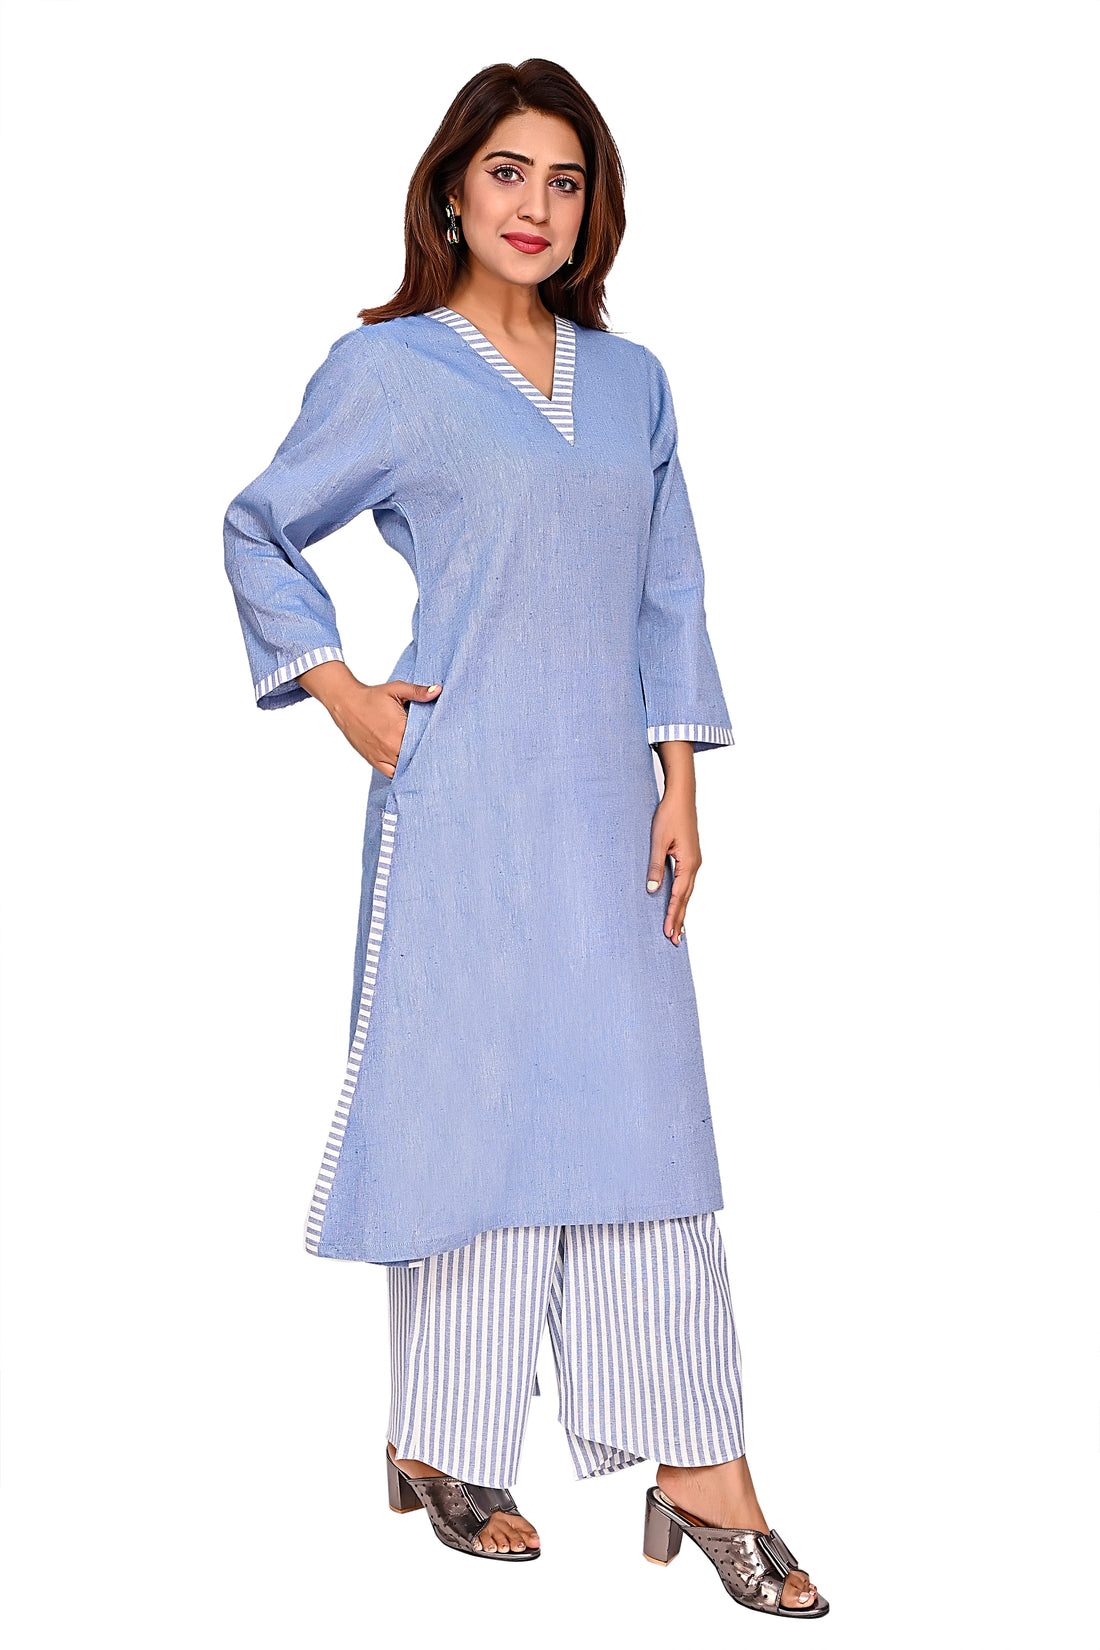 Nirmal online Premium cotton coord set kurti for Women in Blue colour